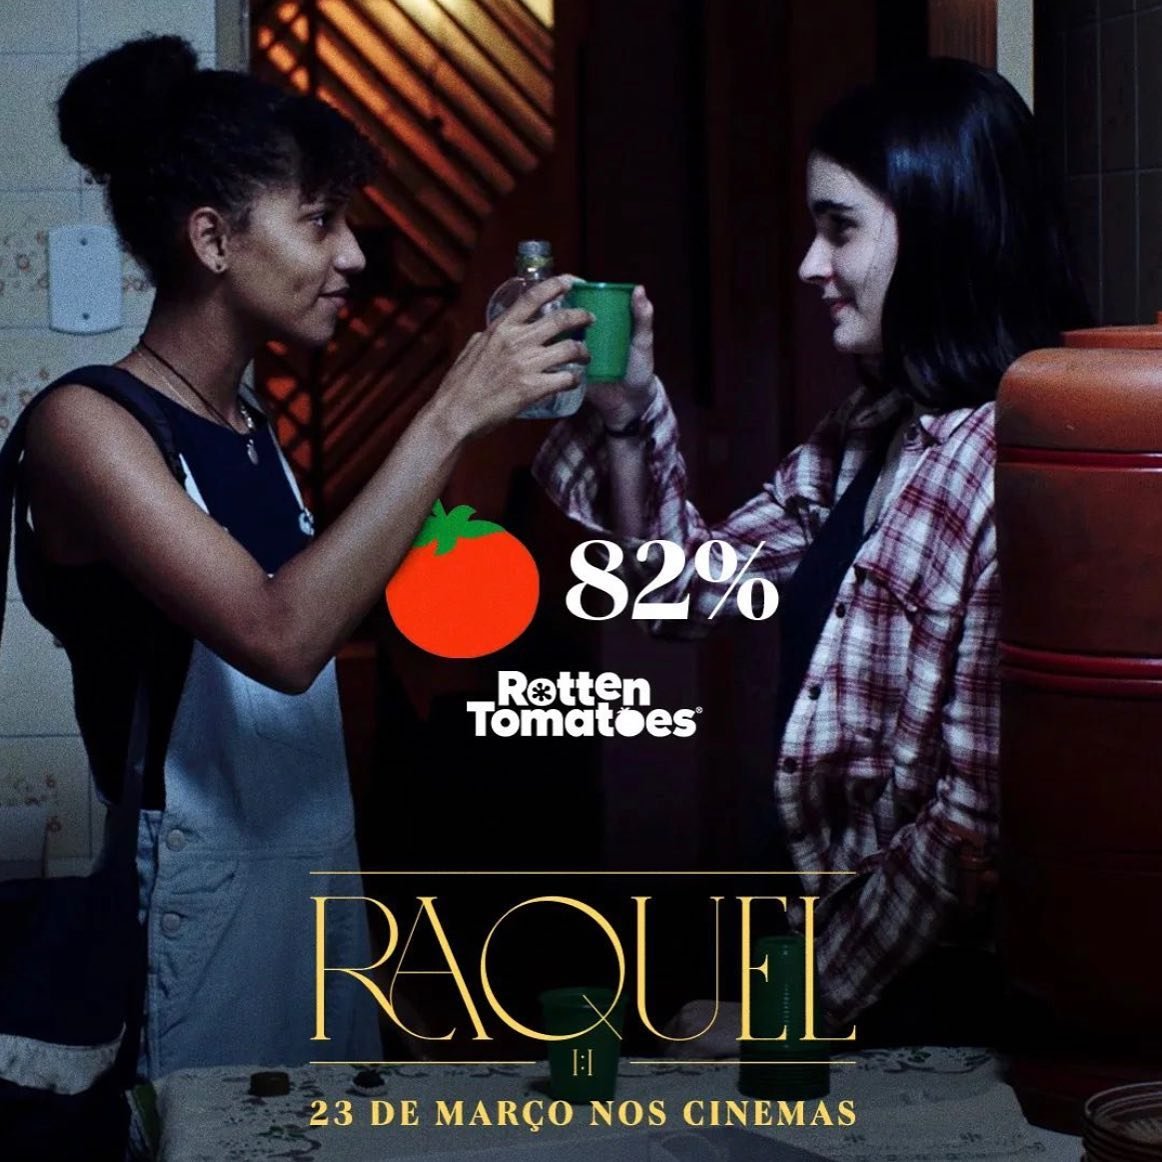 RAQUEL 1:1 tem 82% no
Rotten Tomatoes. 🍅 

Vencedor do pr&ecirc;mio m&aacute;ximo no festival mexicano FICPV, representante do Brasil no
@sxsw e no 37&deg; Festival Internacional de Cinema de Guadalajara, o filme dirigido por Mariana Bastos e estrel